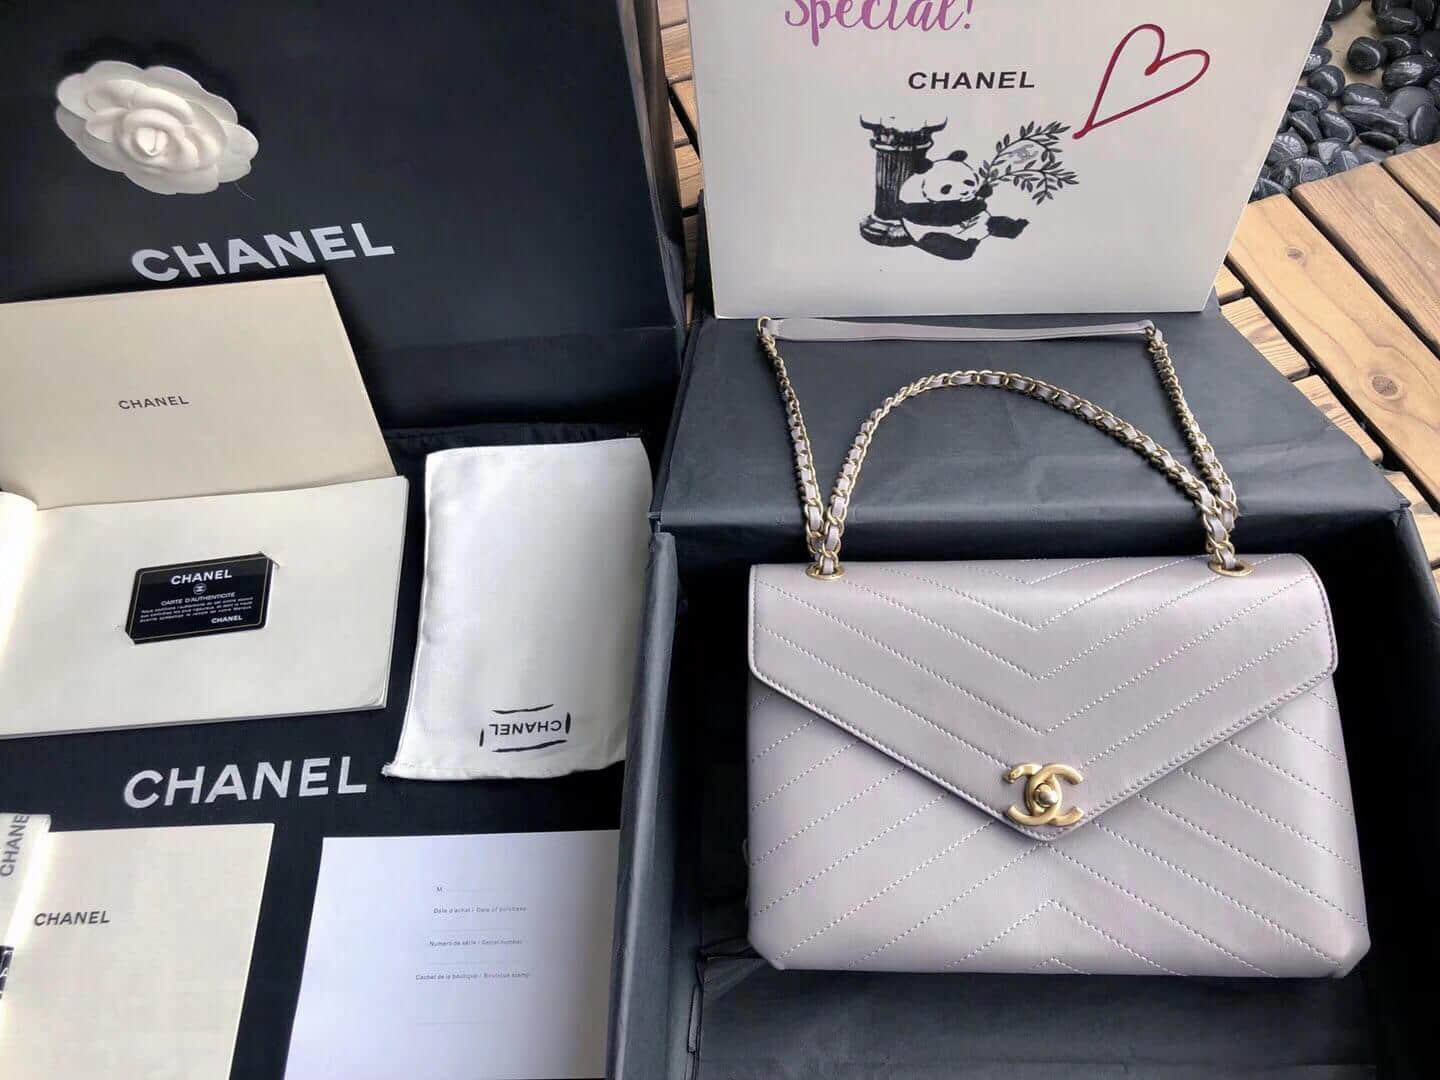 Chanel/香奈儿 18新款斜纹链条信封包邮差包单肩斜挎包